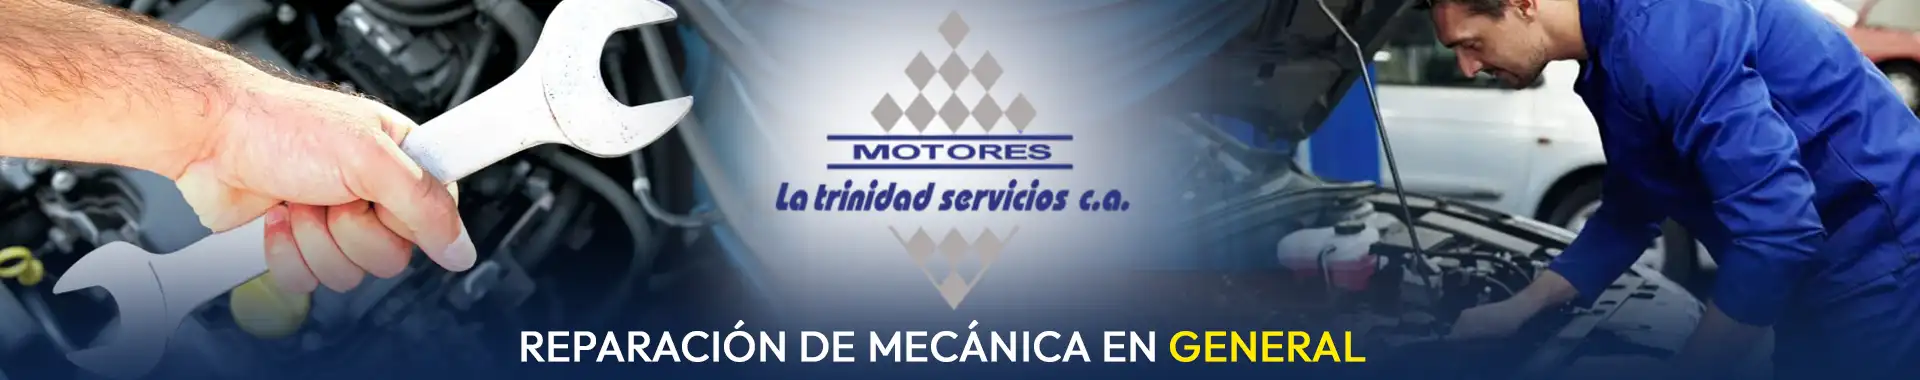 Imagen 2 del perfil de Motores La Trinidad - Servicios